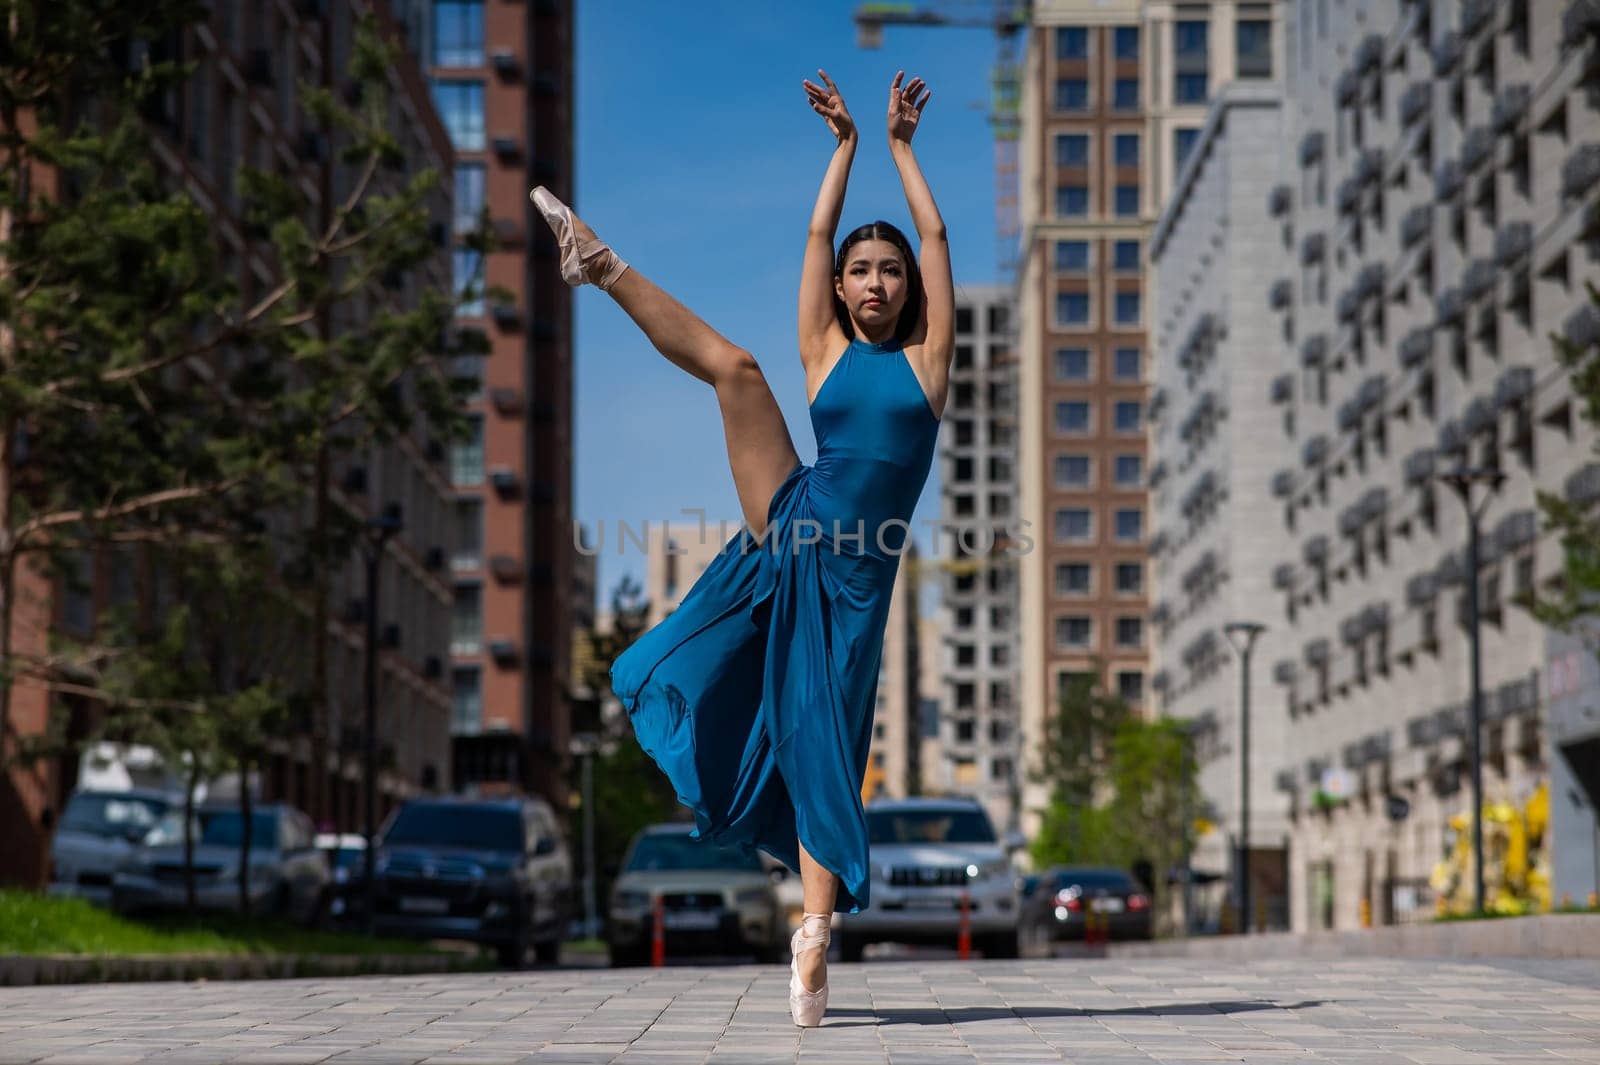 Beautiful Asian ballerina in blue dress posing in splits outdoors. Urban landscape. by mrwed54